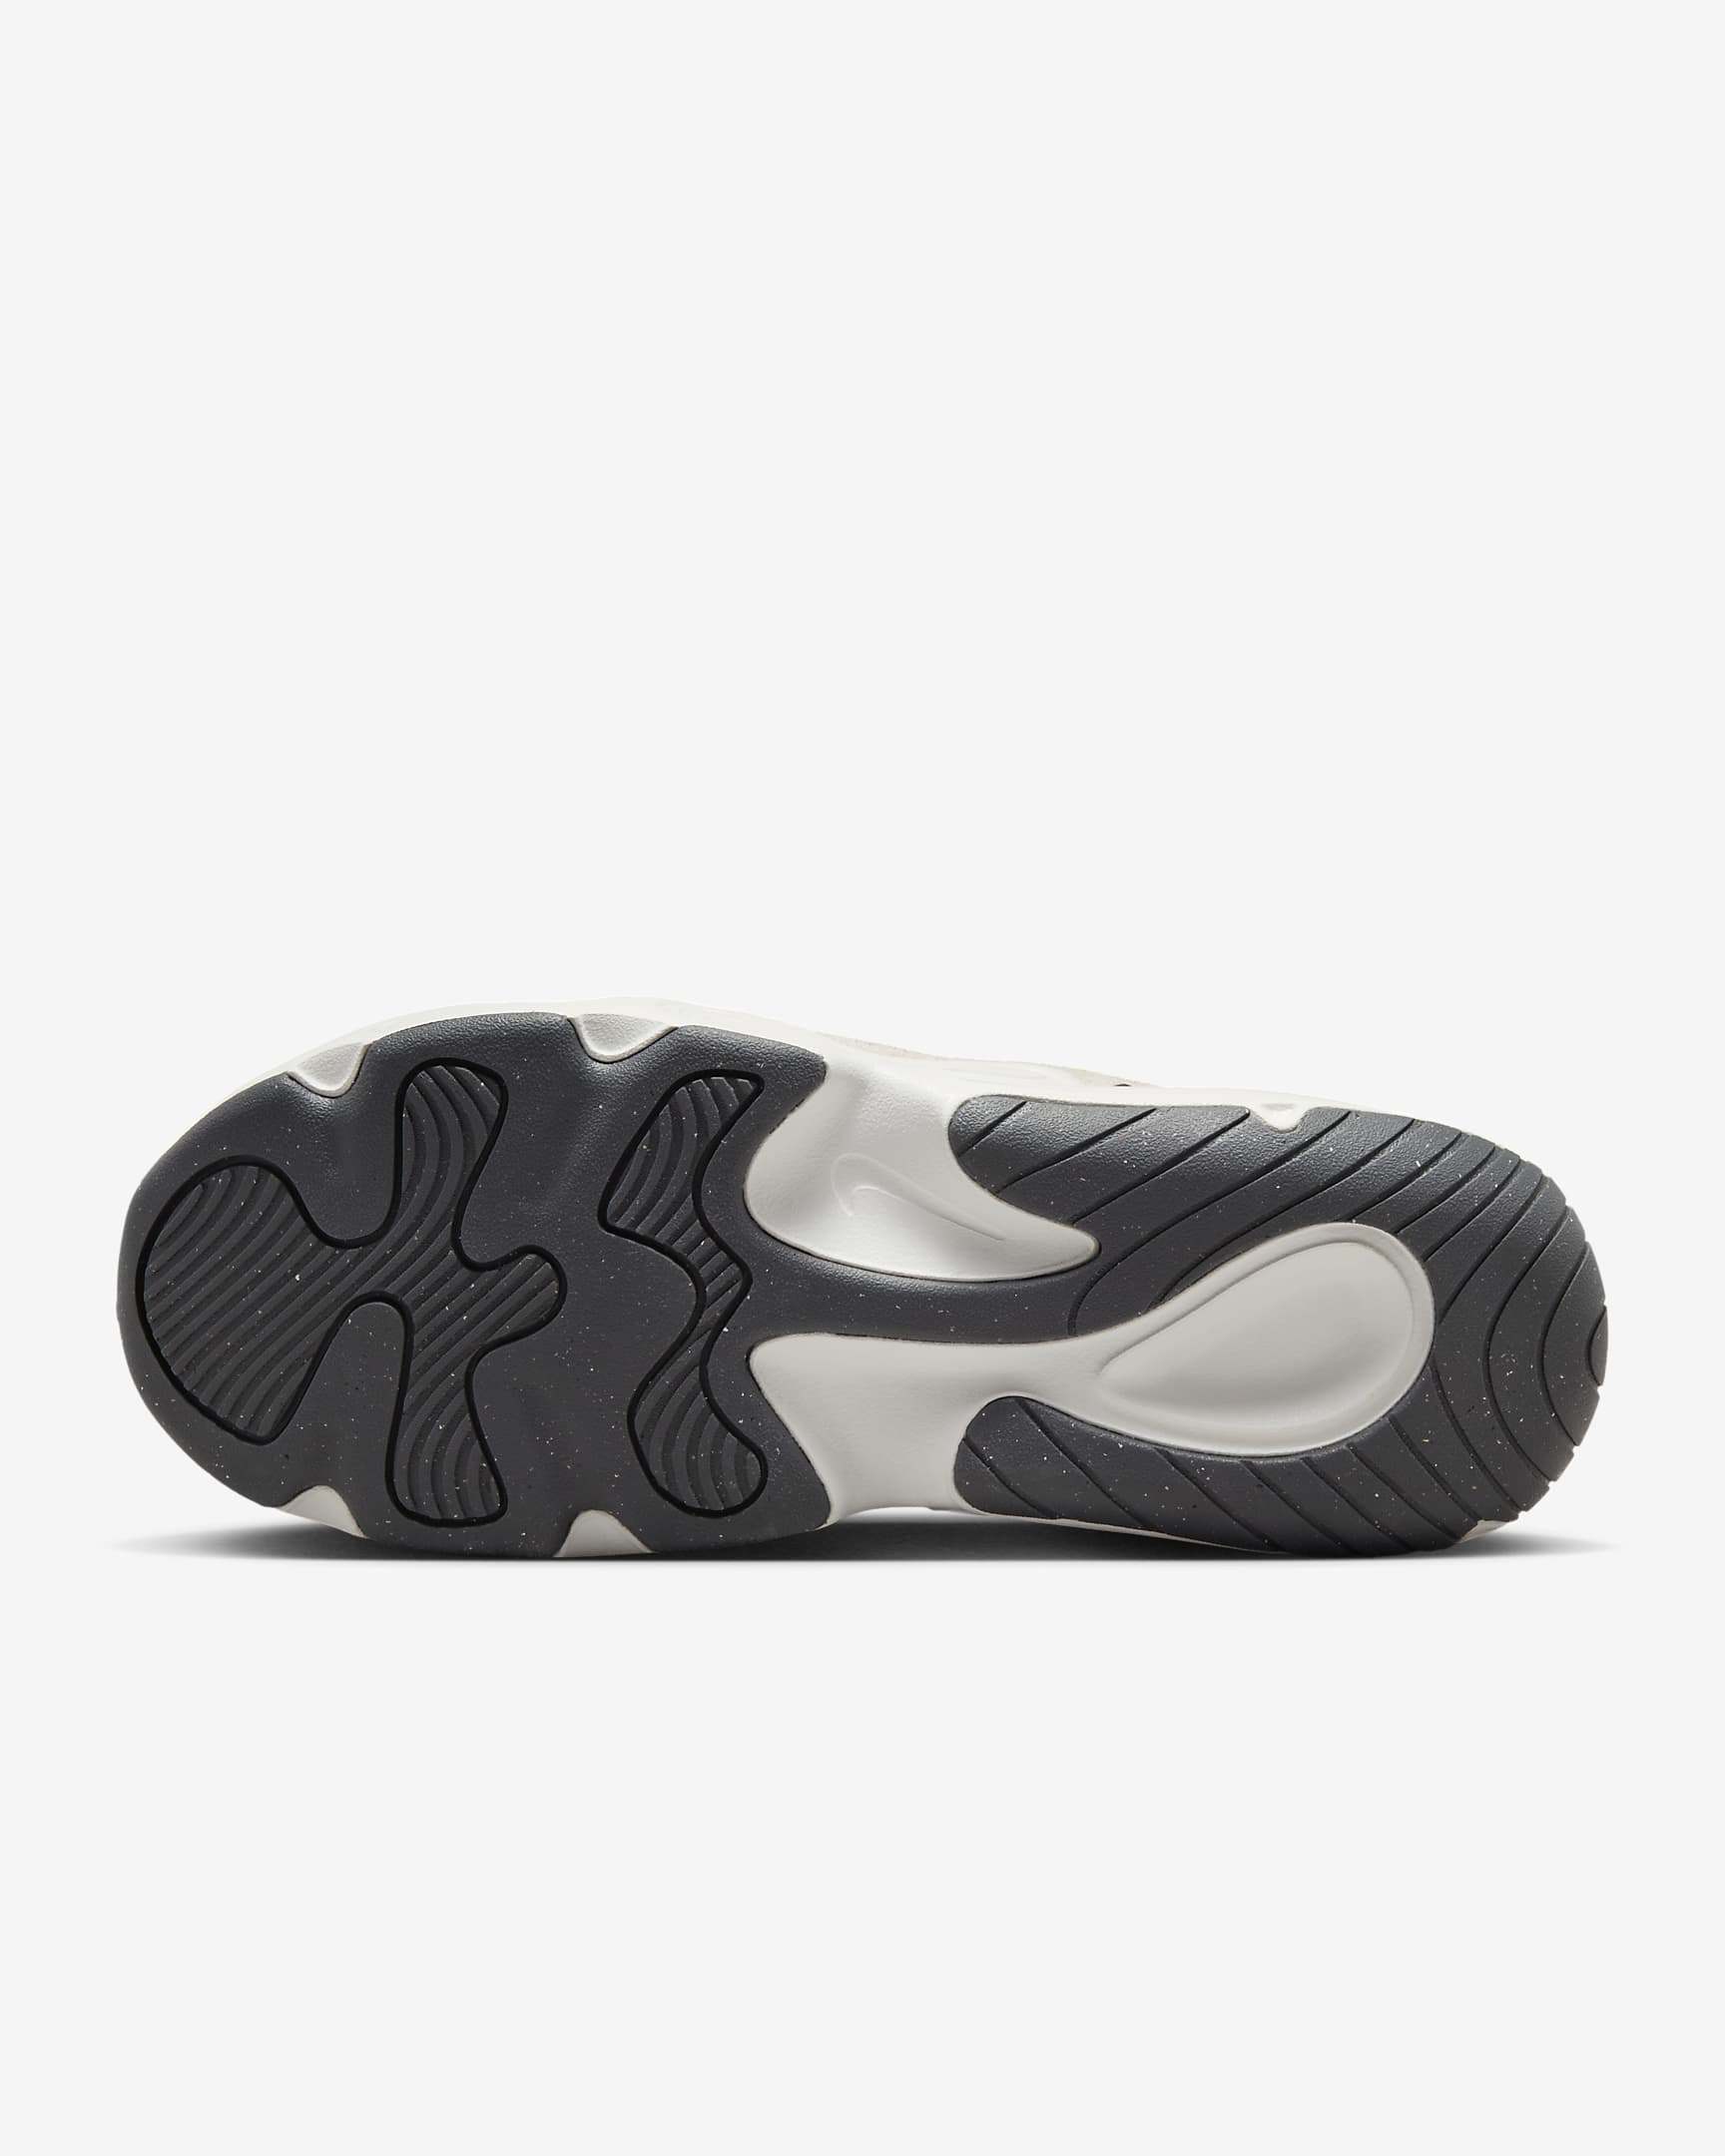 Nike Tech Hera Women's Shoes - Saturn Gold/Light Bone/Phantom/Iron Grey